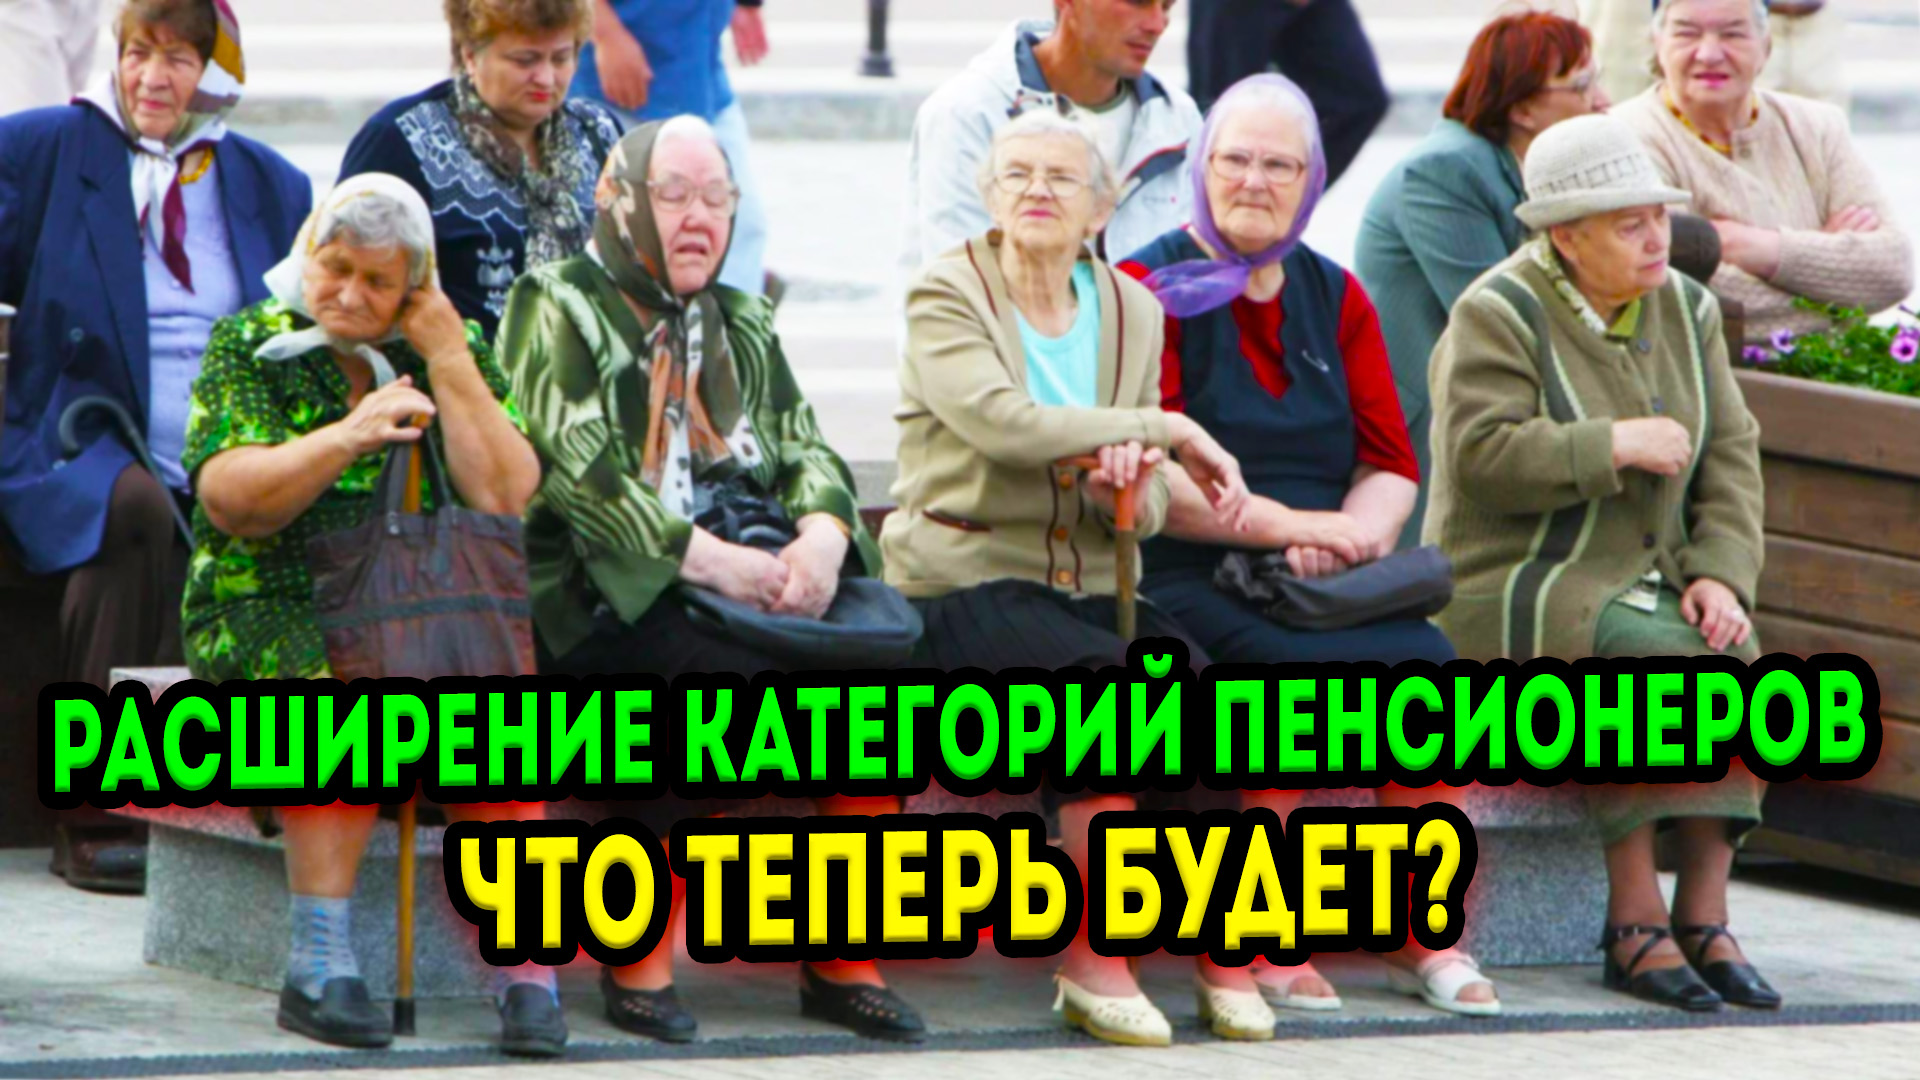 Какой категории пенсионеров с 1 апреля. Категории пенсионеров в России. Смешные пенсионеры. Пенсионеры за пенсией. Приколы про пенсионеров.